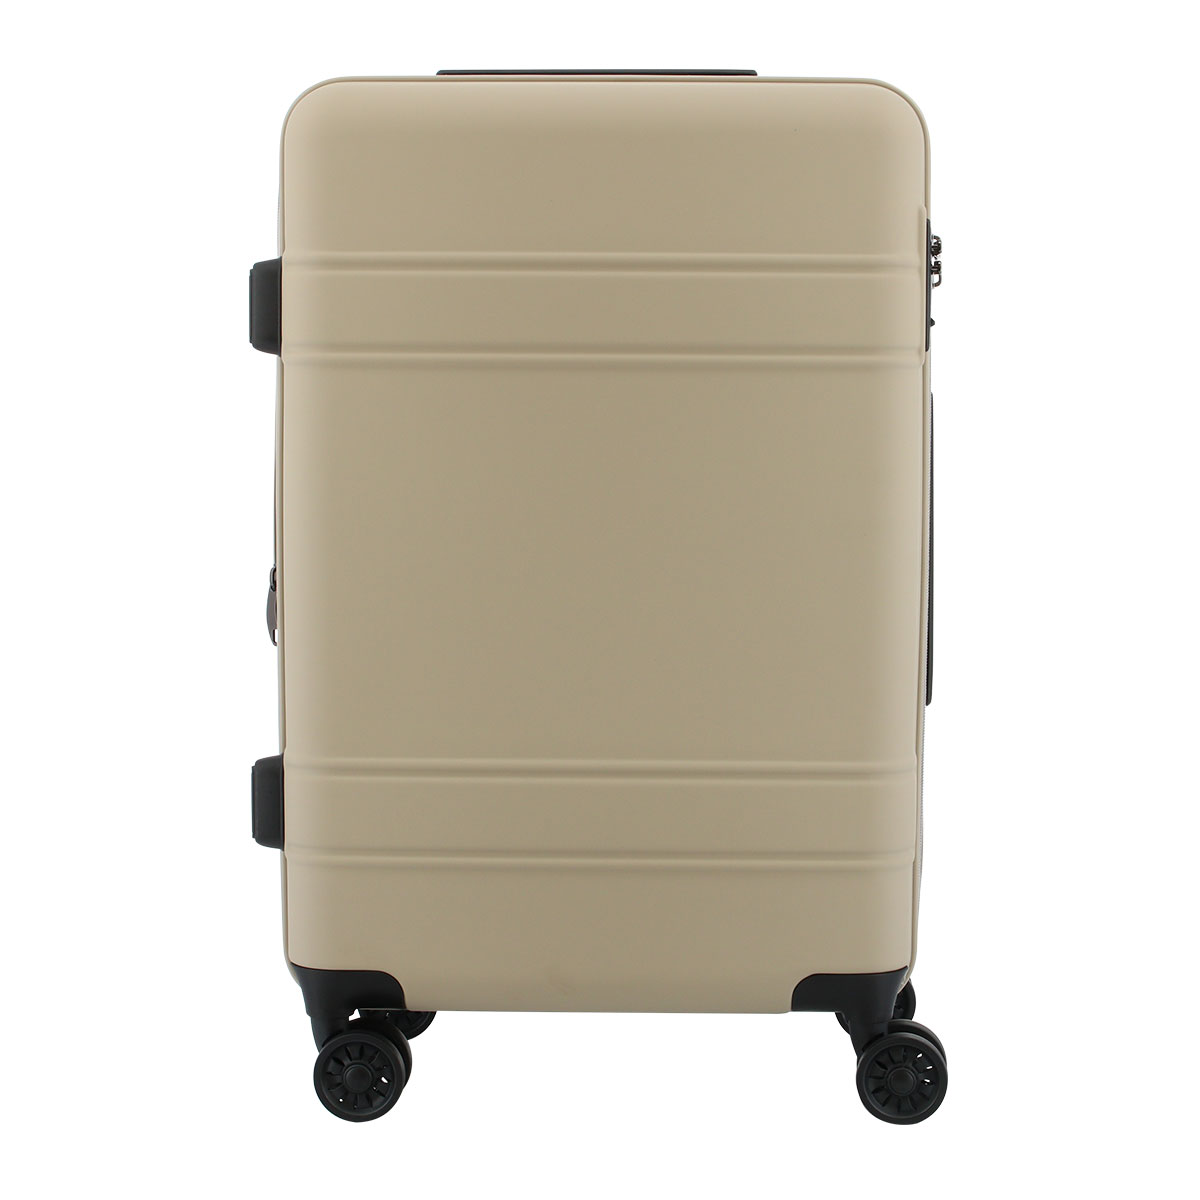 日本直販FREELANCE スーツケース キャリーバッグ 46L カーキ トラベルバッグ/スーツケース